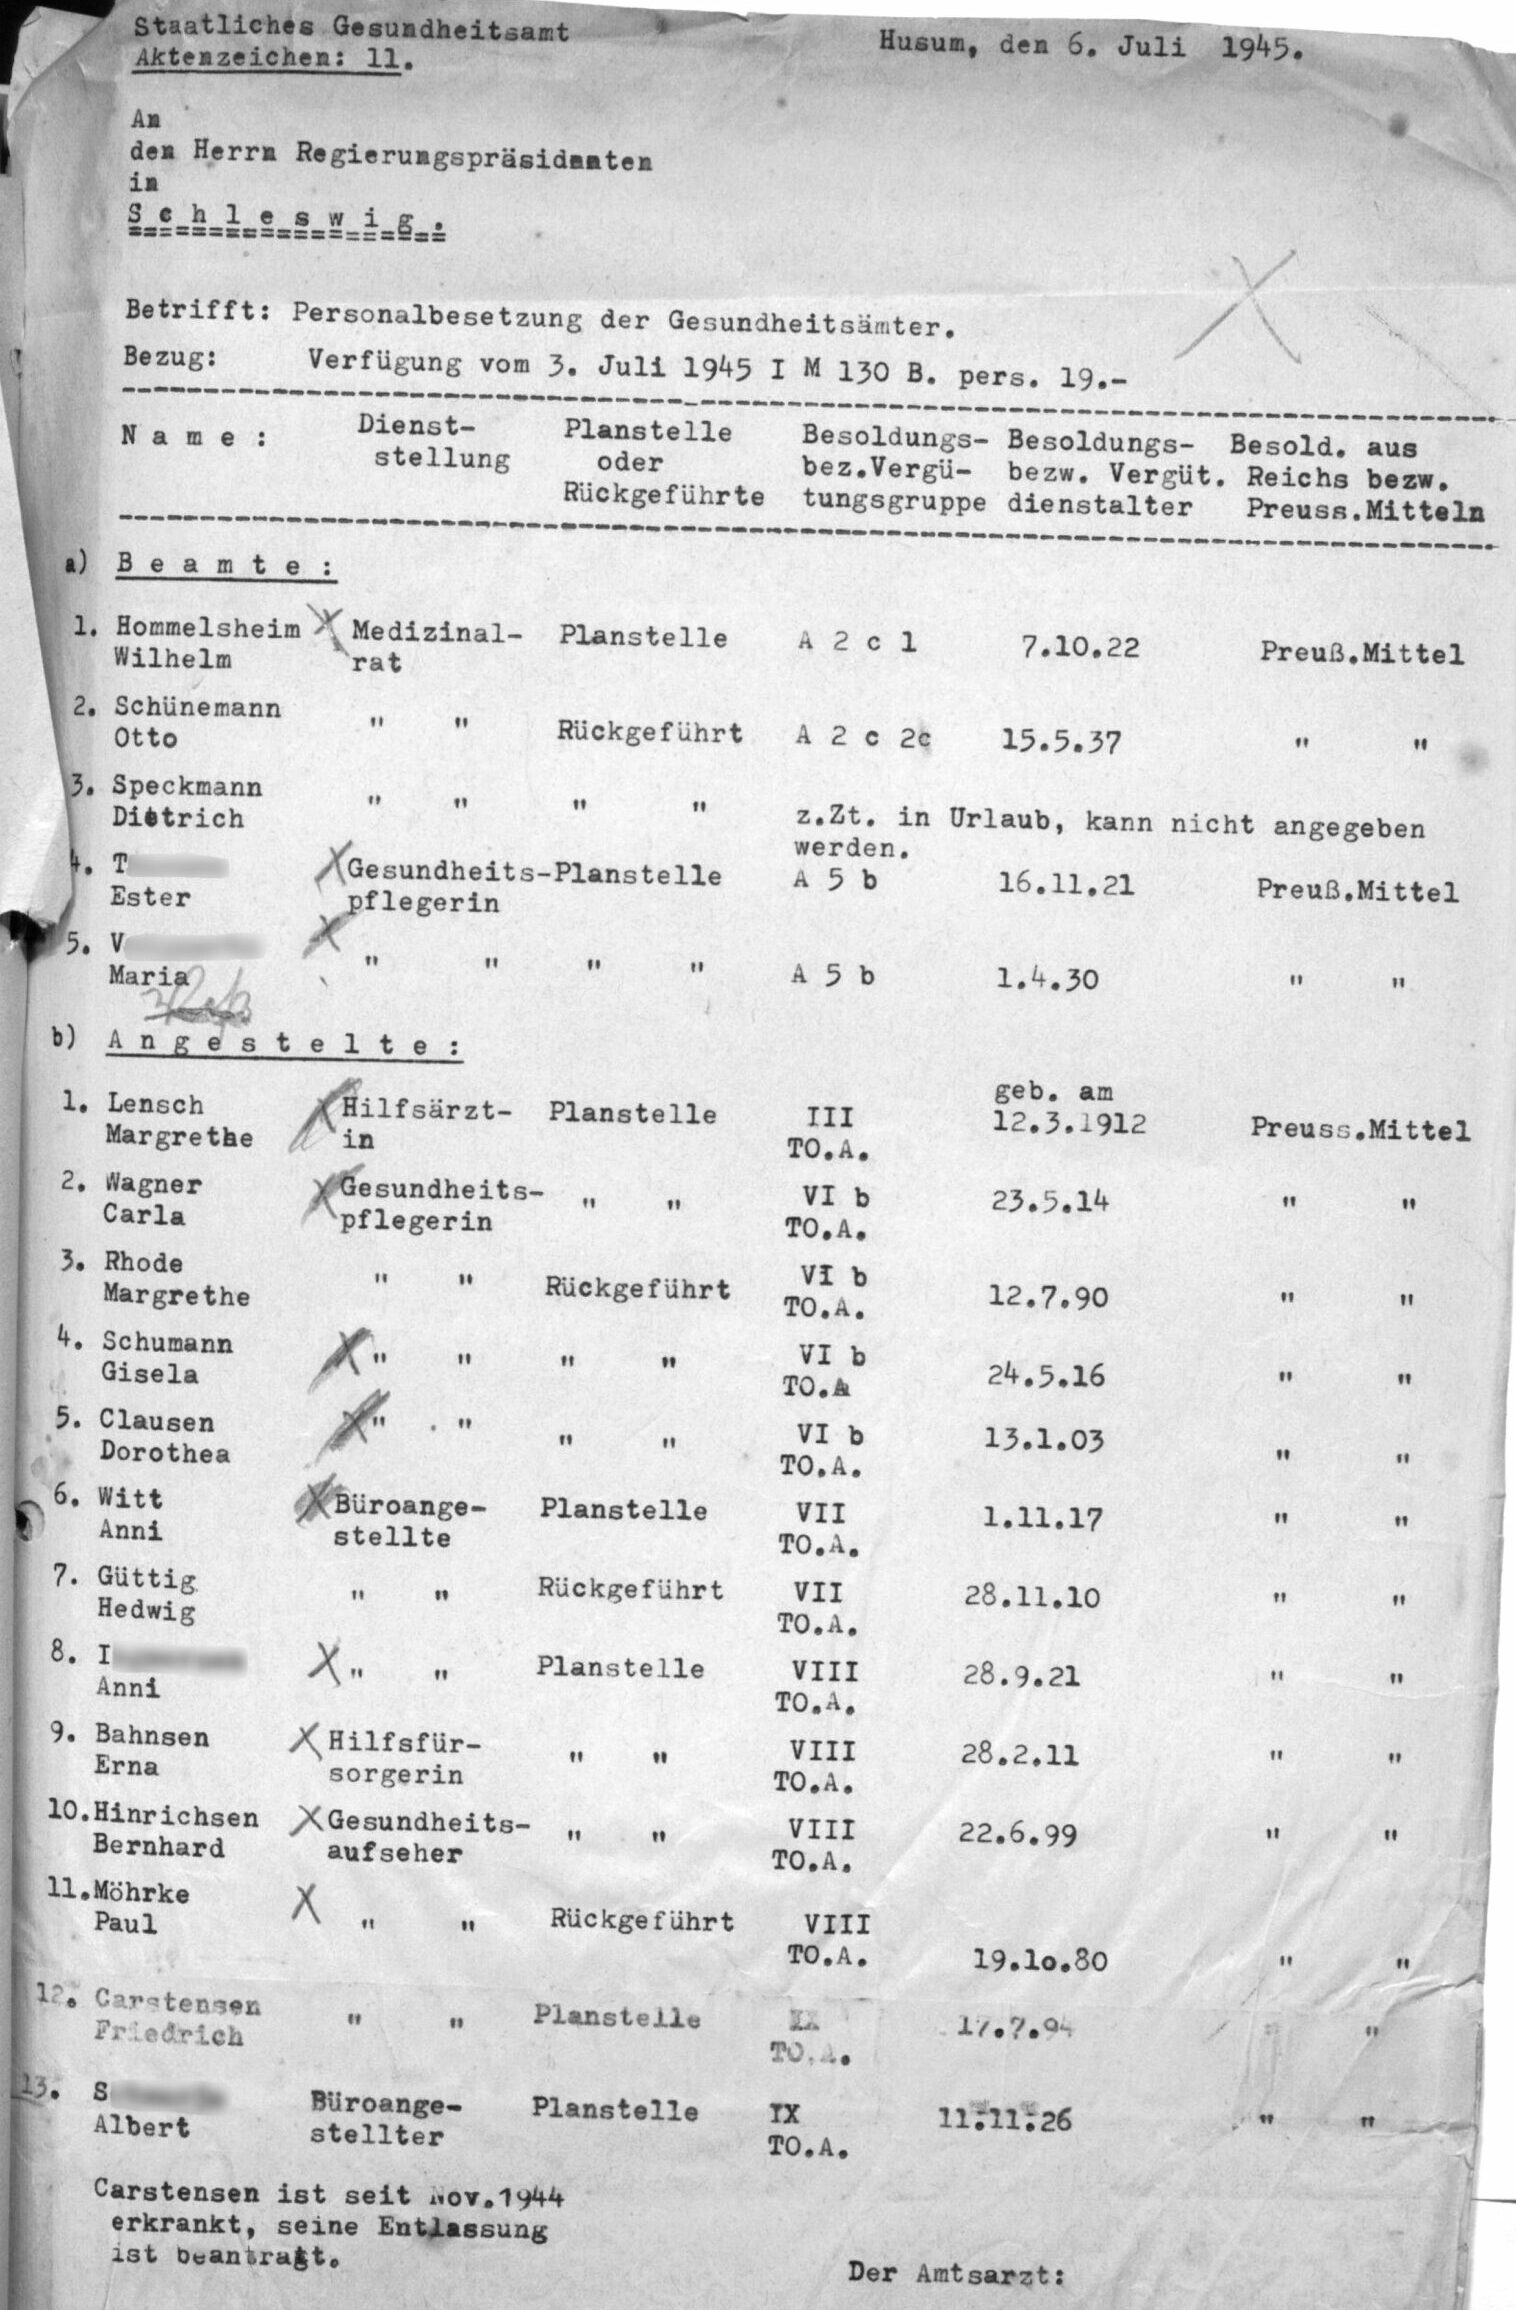 Die Personalliste des Gesundheitsamtes stellte Hommelsheim für den Regierungspräsidenten in Schleswig zusammen. Im Juli 1945 war dieser der britischen Militärverwaltung untergeordnet. [Landesarchiv Schleswig-Holstein | Abteilung 320.9 | Nr. 1841]